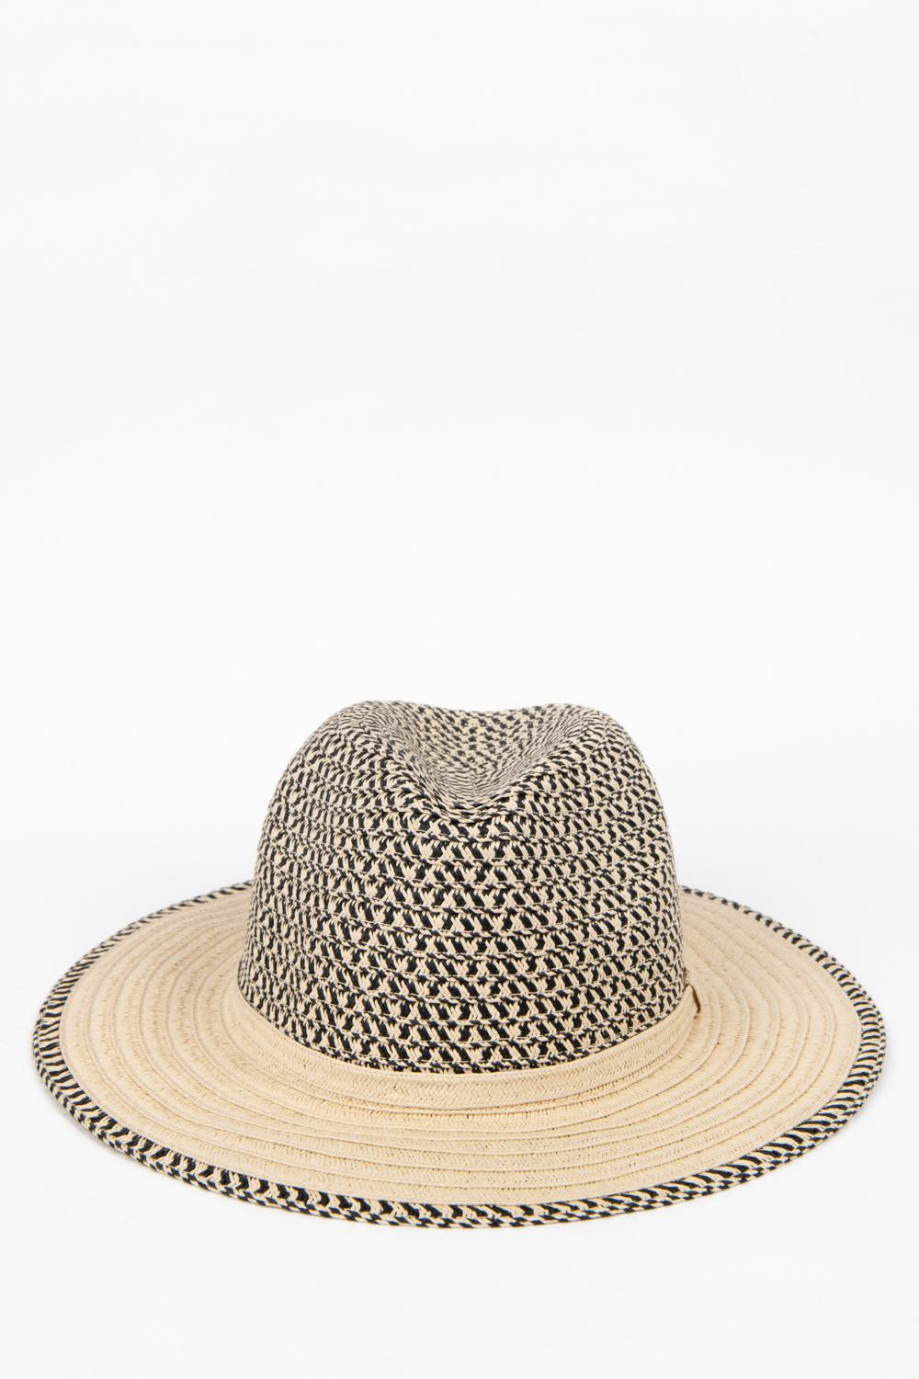 Sombrero kaky claro con ala plana y detalles en contraste